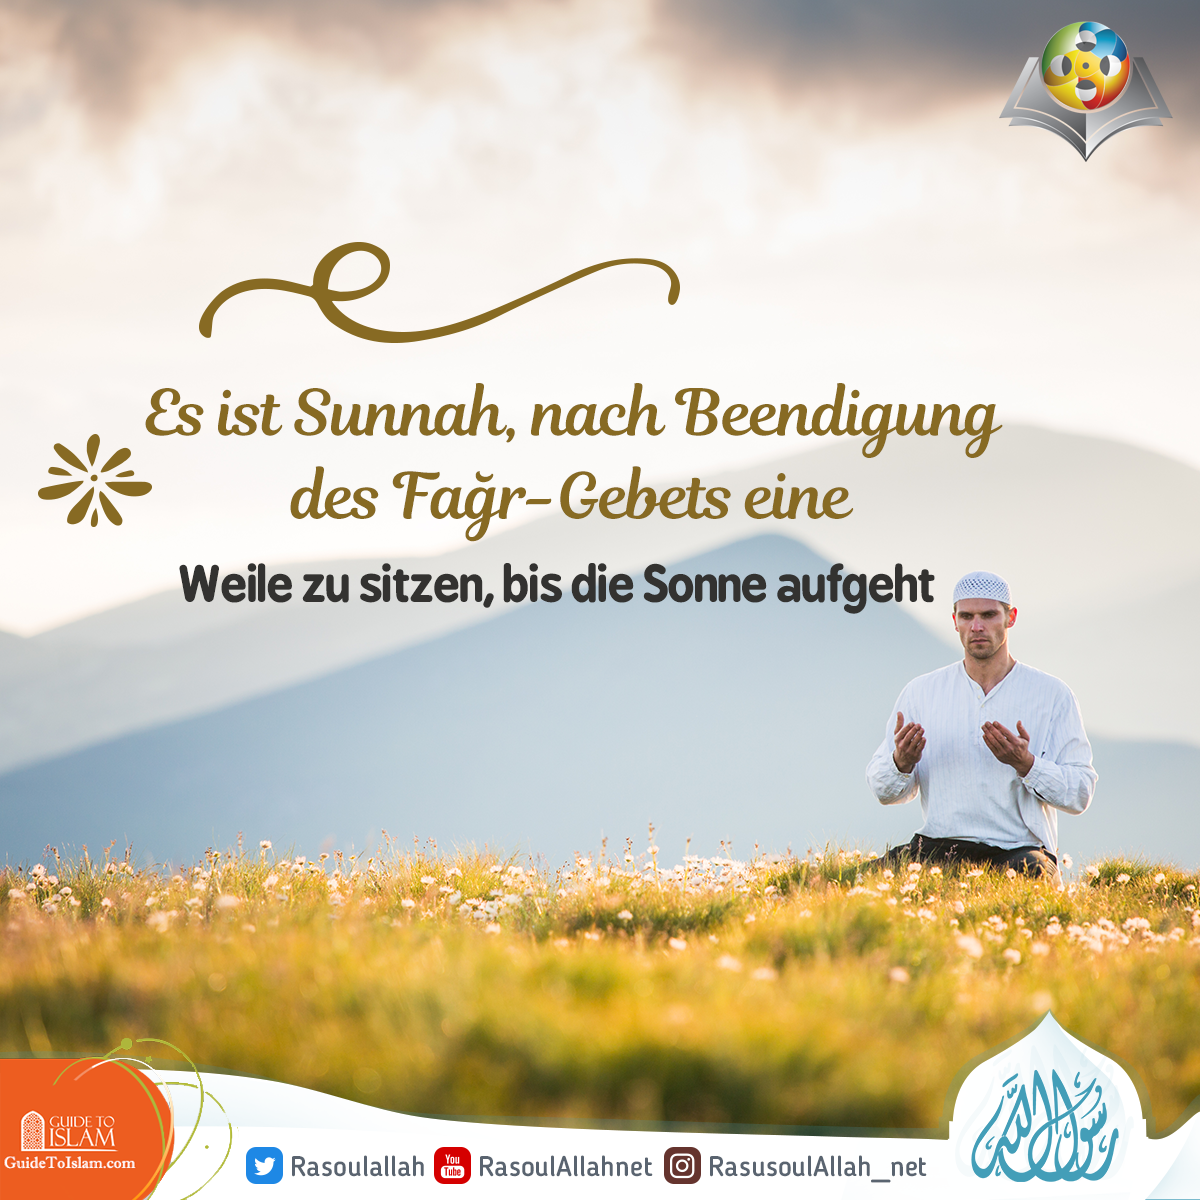 	Es ist Sunnah, nach Beendigung des Fağr-Gebets eine Weile zu sitzen, bis die Sonne aufgeht